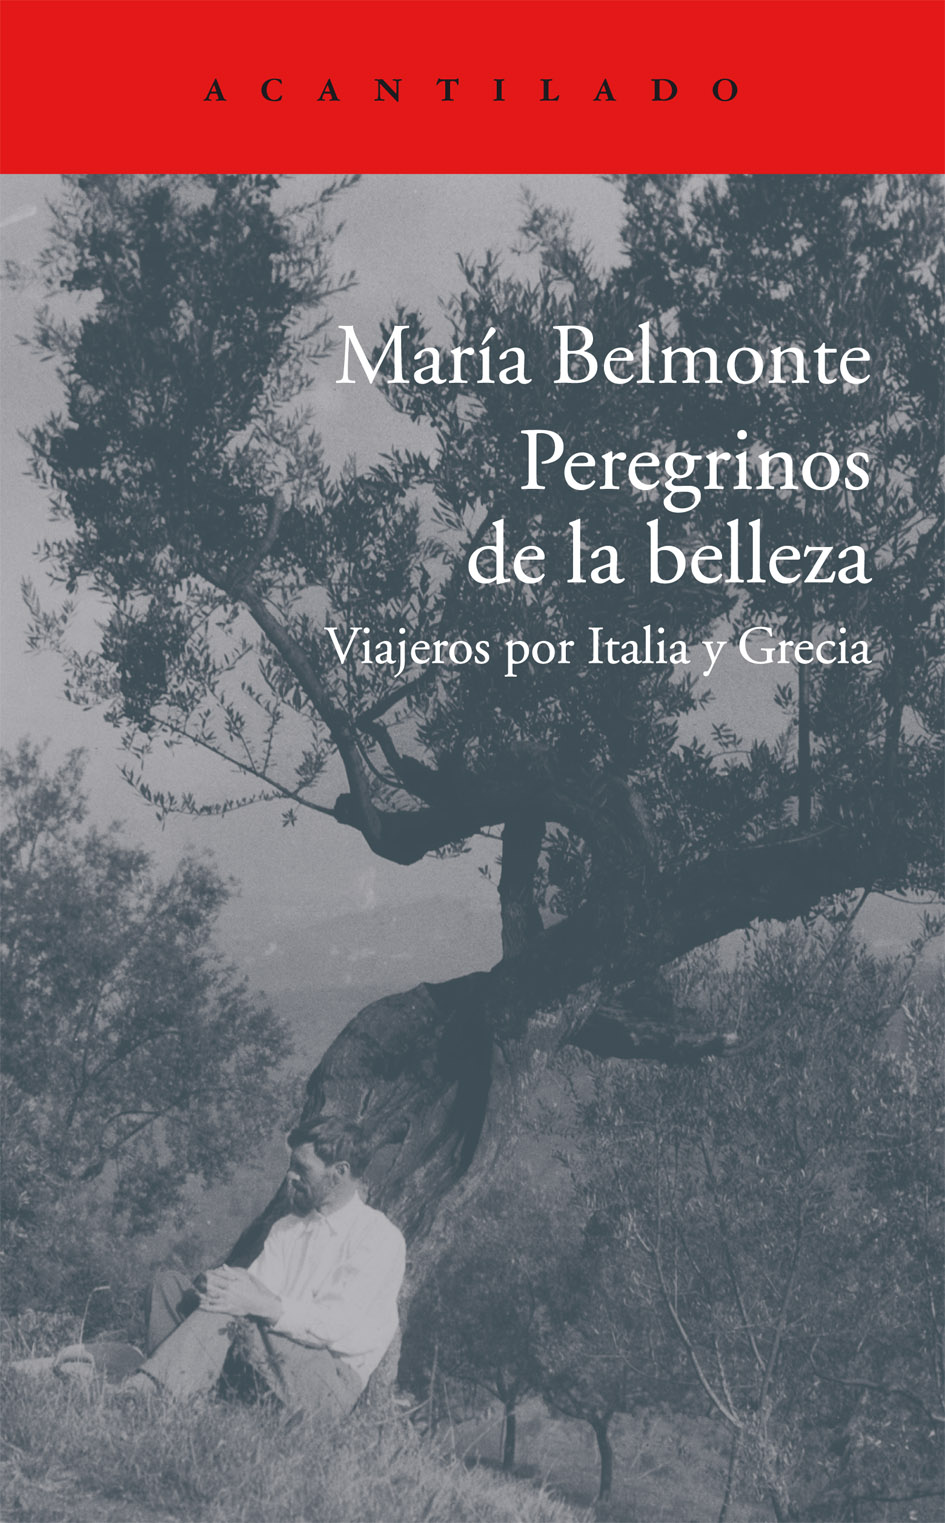 María Belmonte. Peregrinos de la belleza